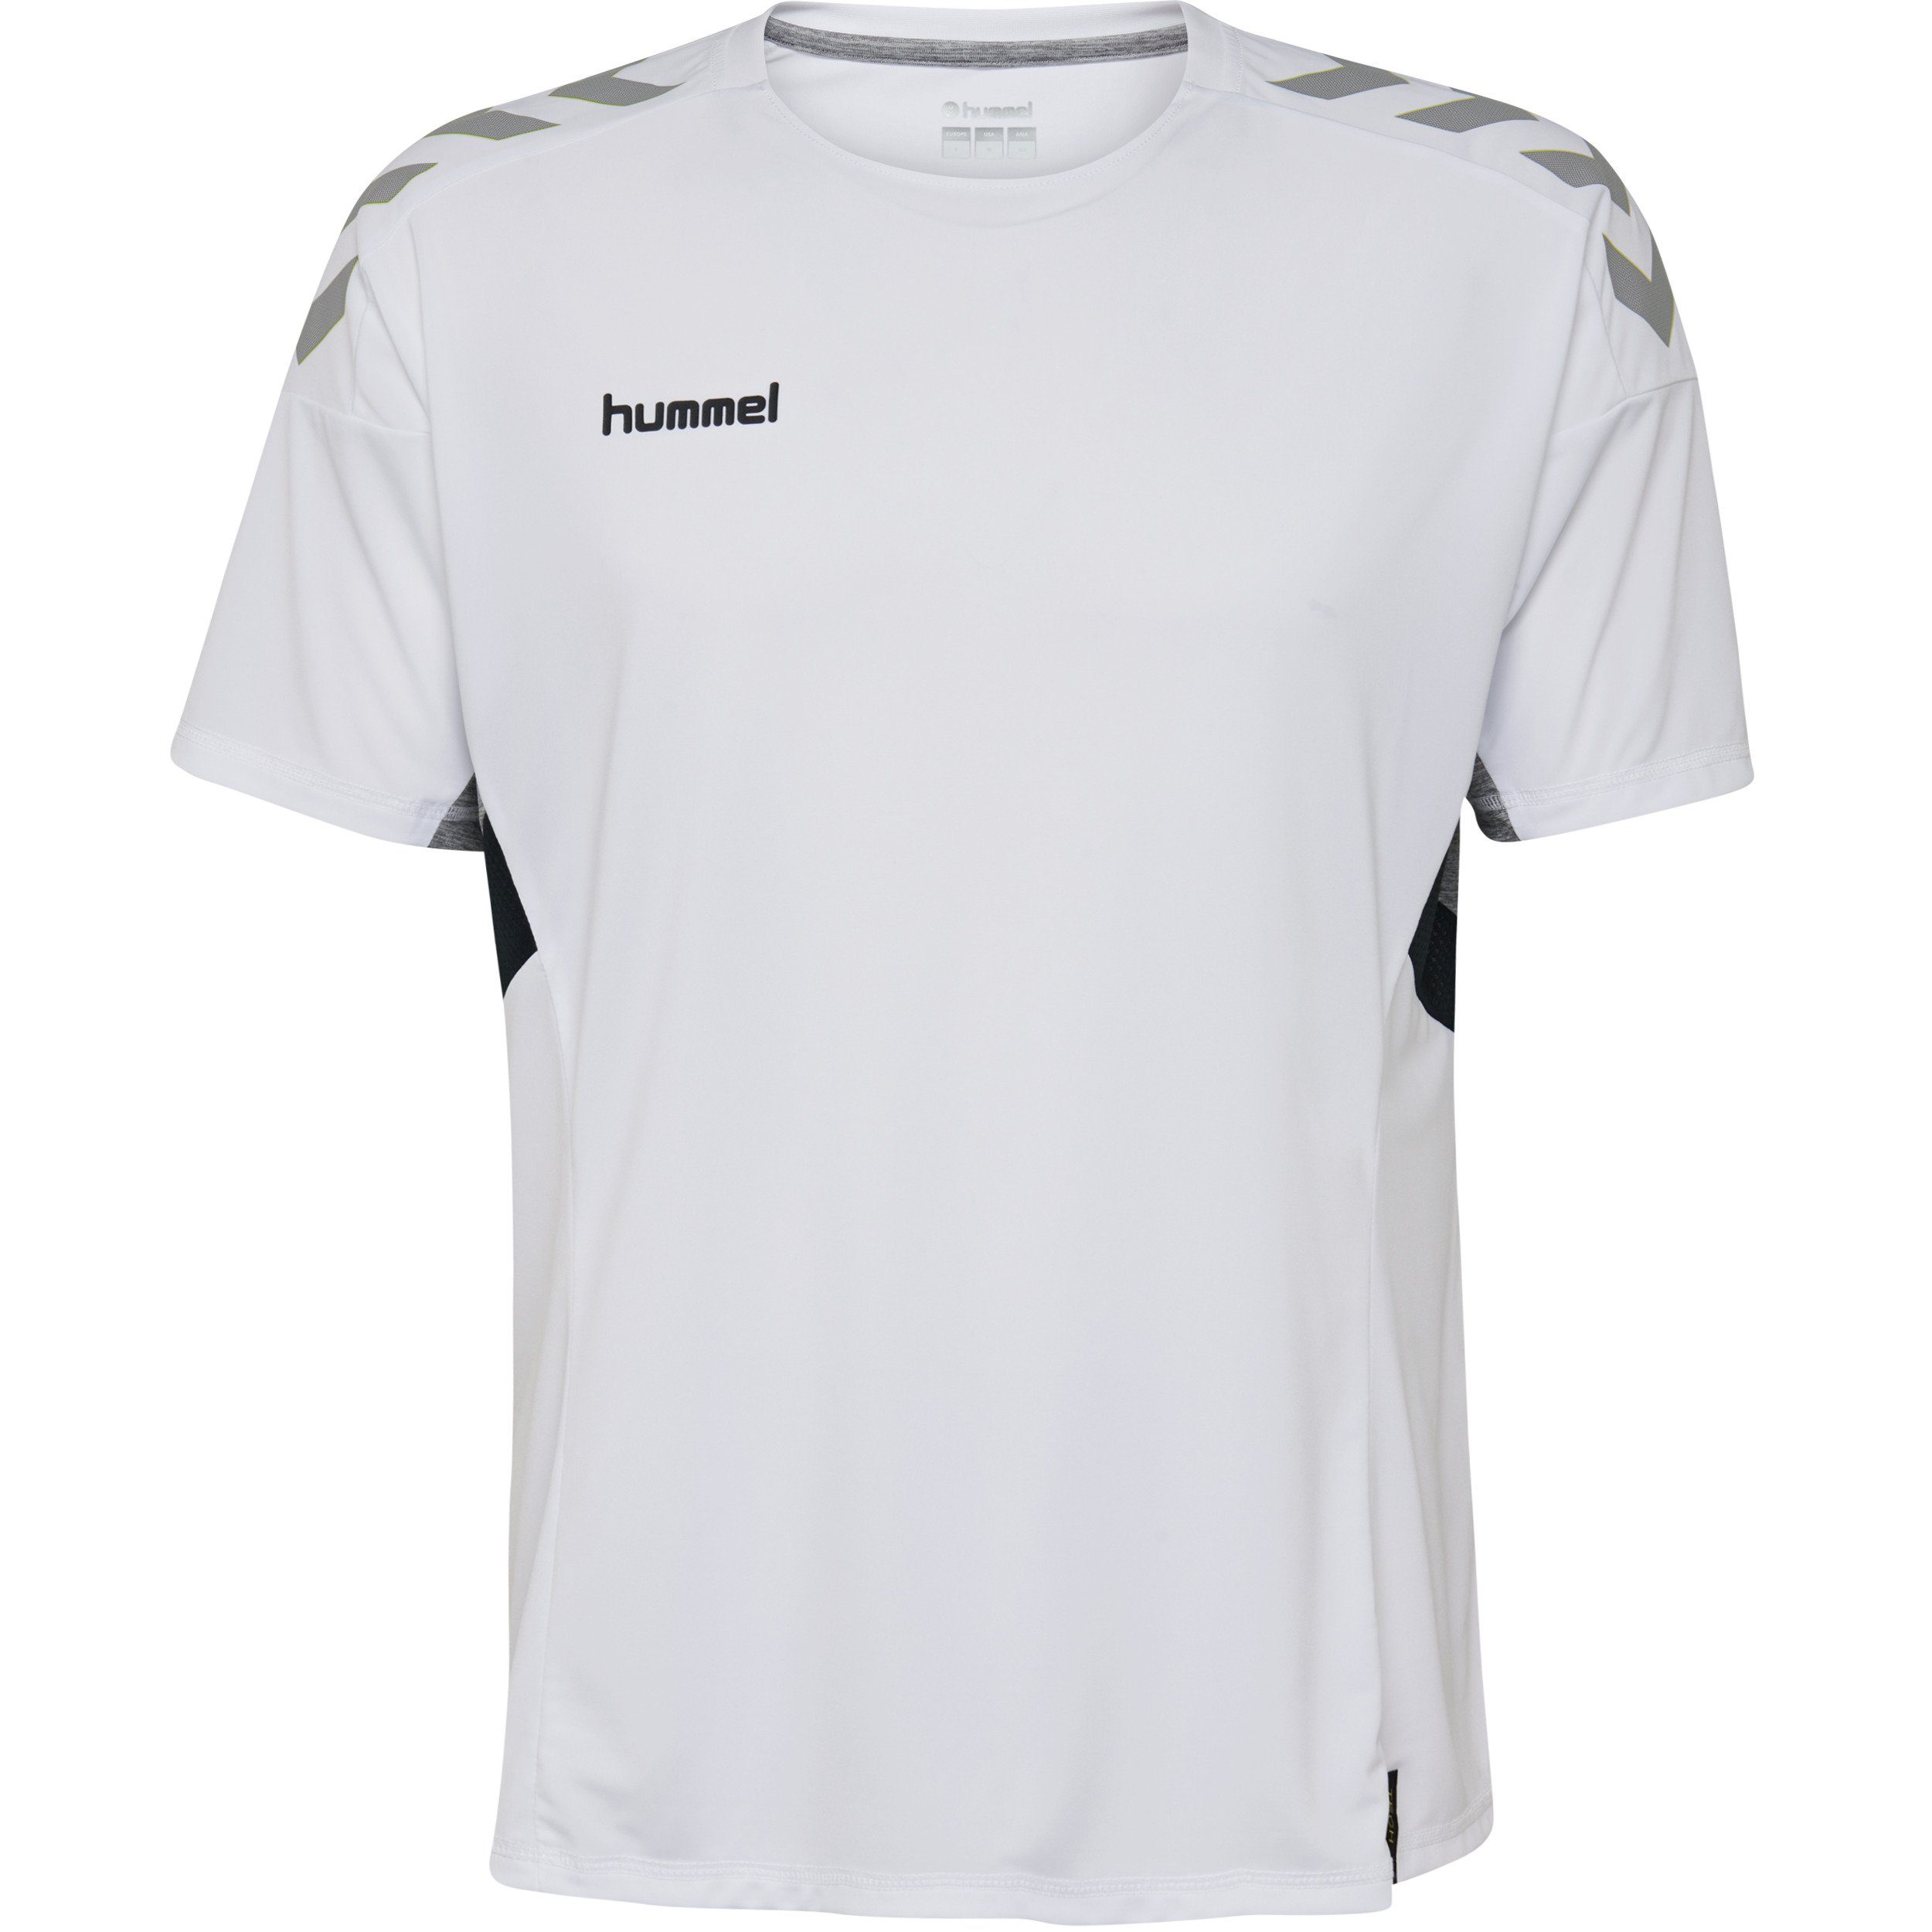 hummel Handballtrikot Hummel Herren Tech Move Trikot weiß Shirt Sport  Fitness Fußball Training T-Shirt online kaufen | OTTO